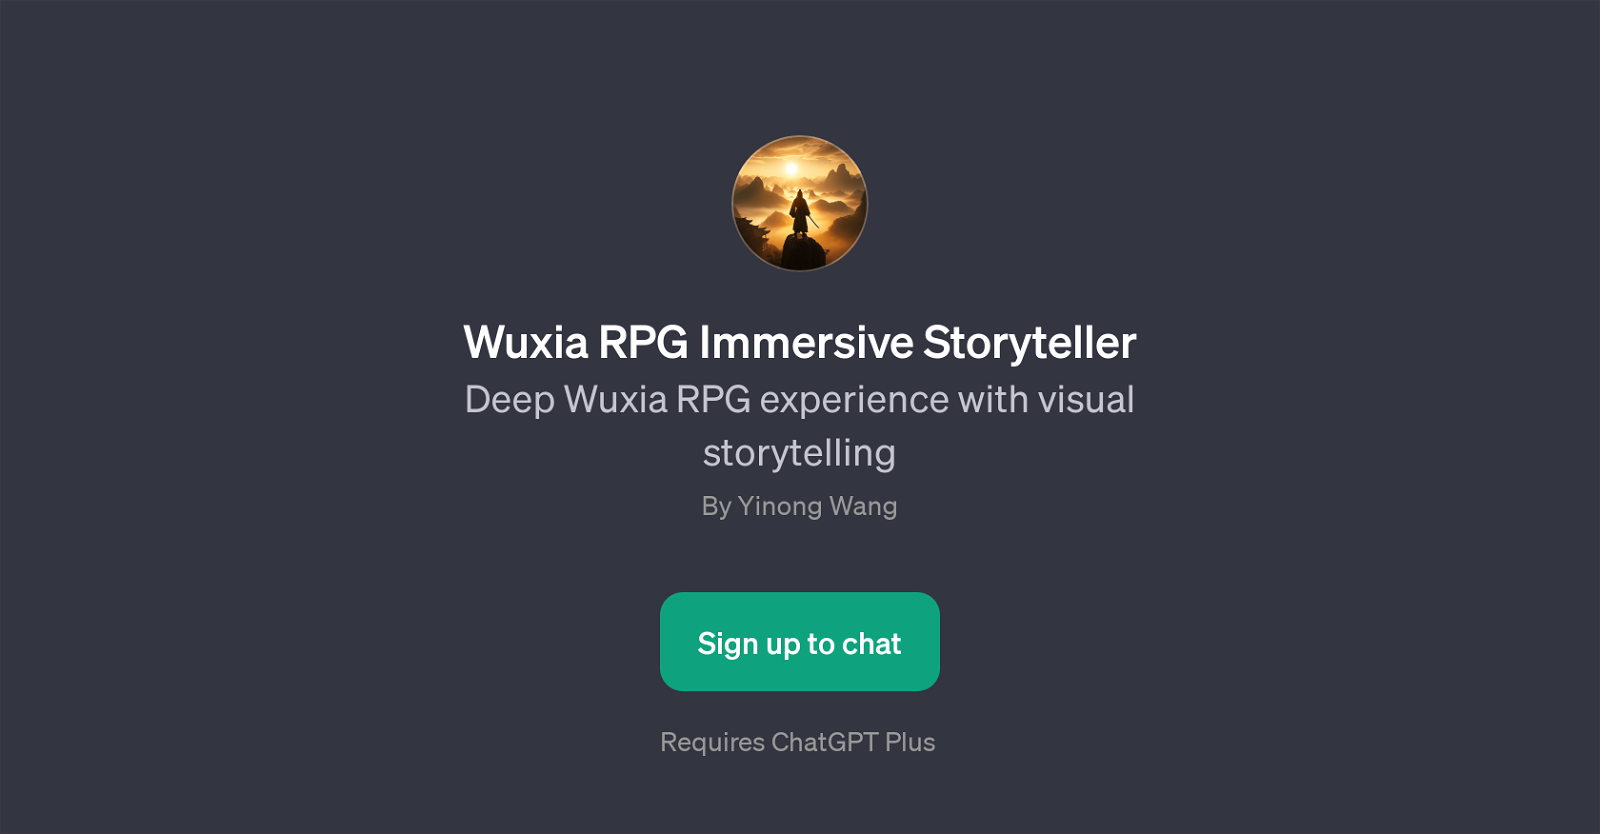 Wuxia RPG Immersive Storyteller website